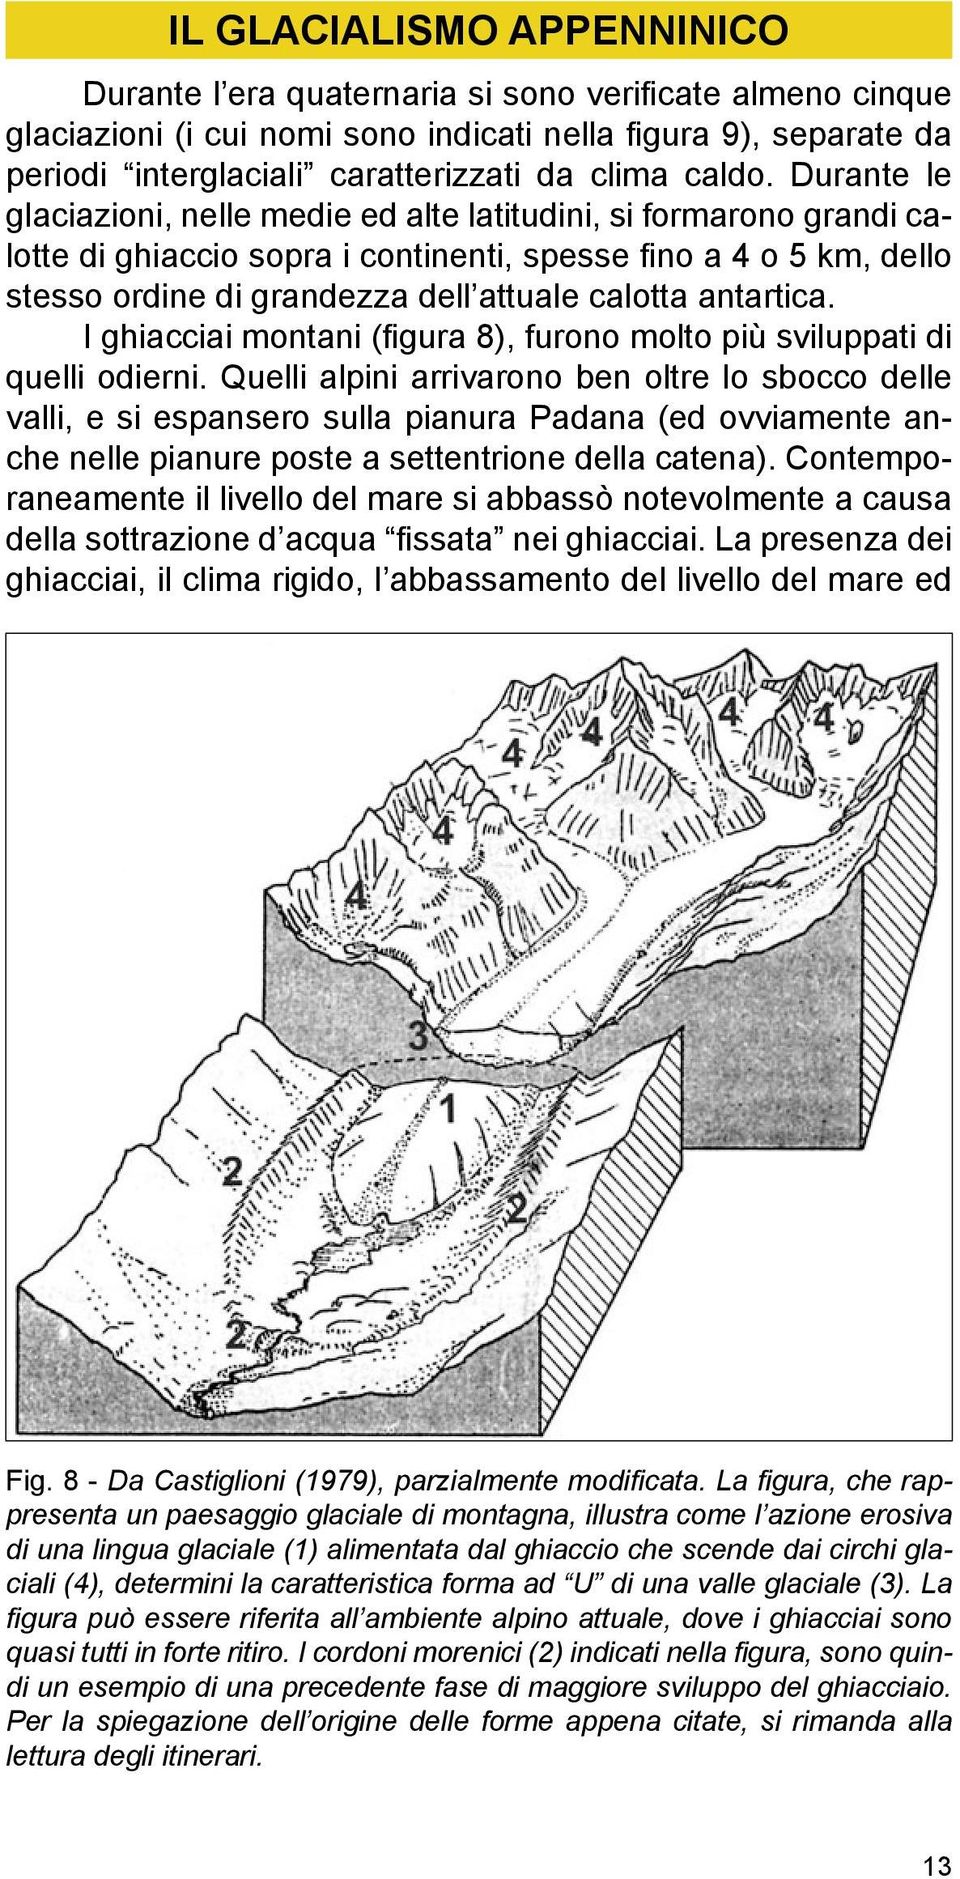 Durante le glaciazioni, nelle medie ed alte latitudini, si formarono grandi calotte di ghiaccio sopra i continenti, spesse fino a 4 o 5 km, dello stesso ordine di grandezza dell attuale calotta